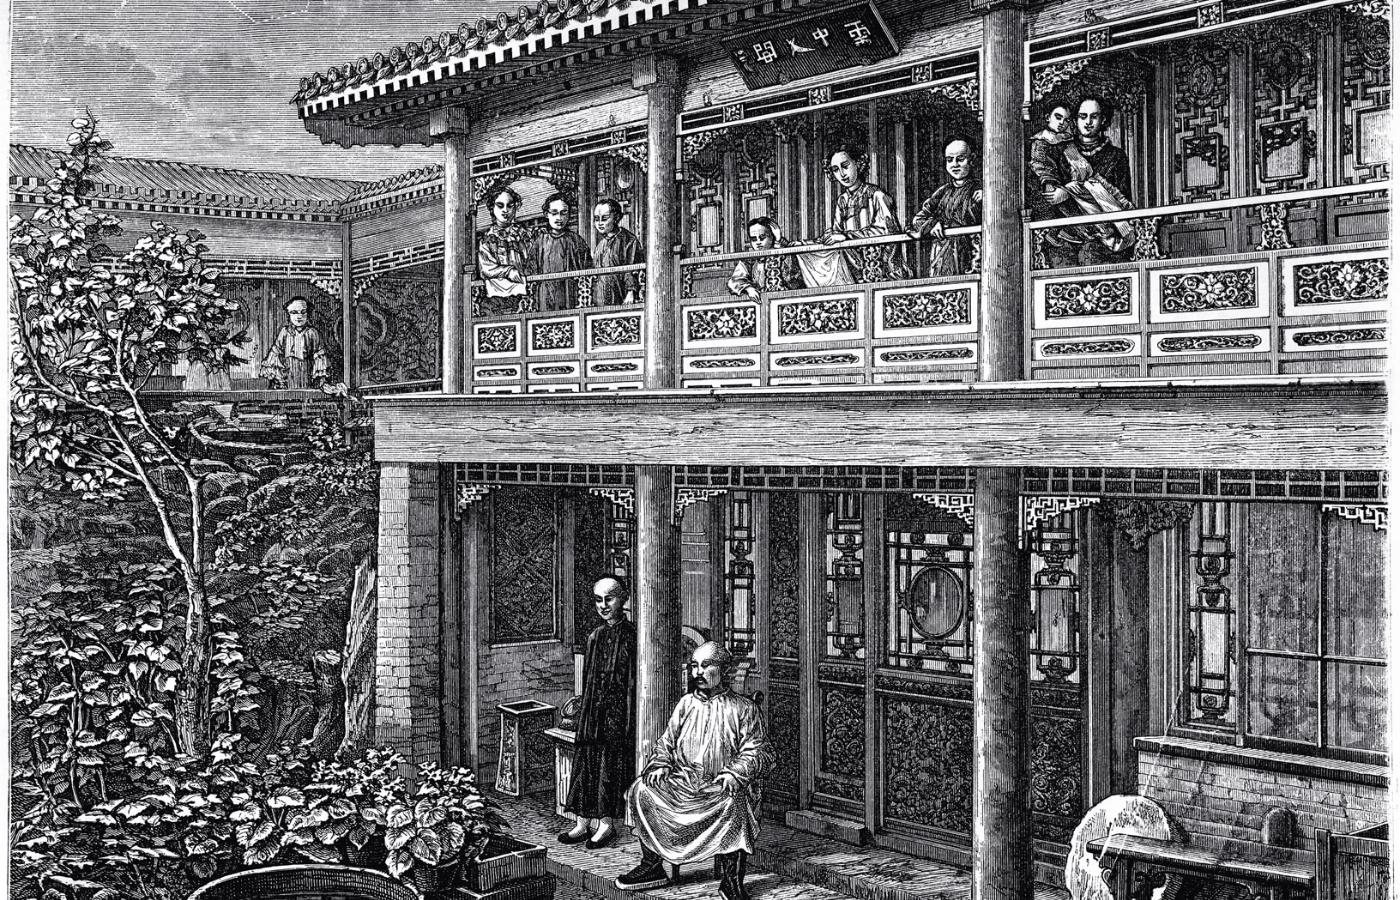 Tradycyjny chiński dom. Ilustracja z 1884 r.